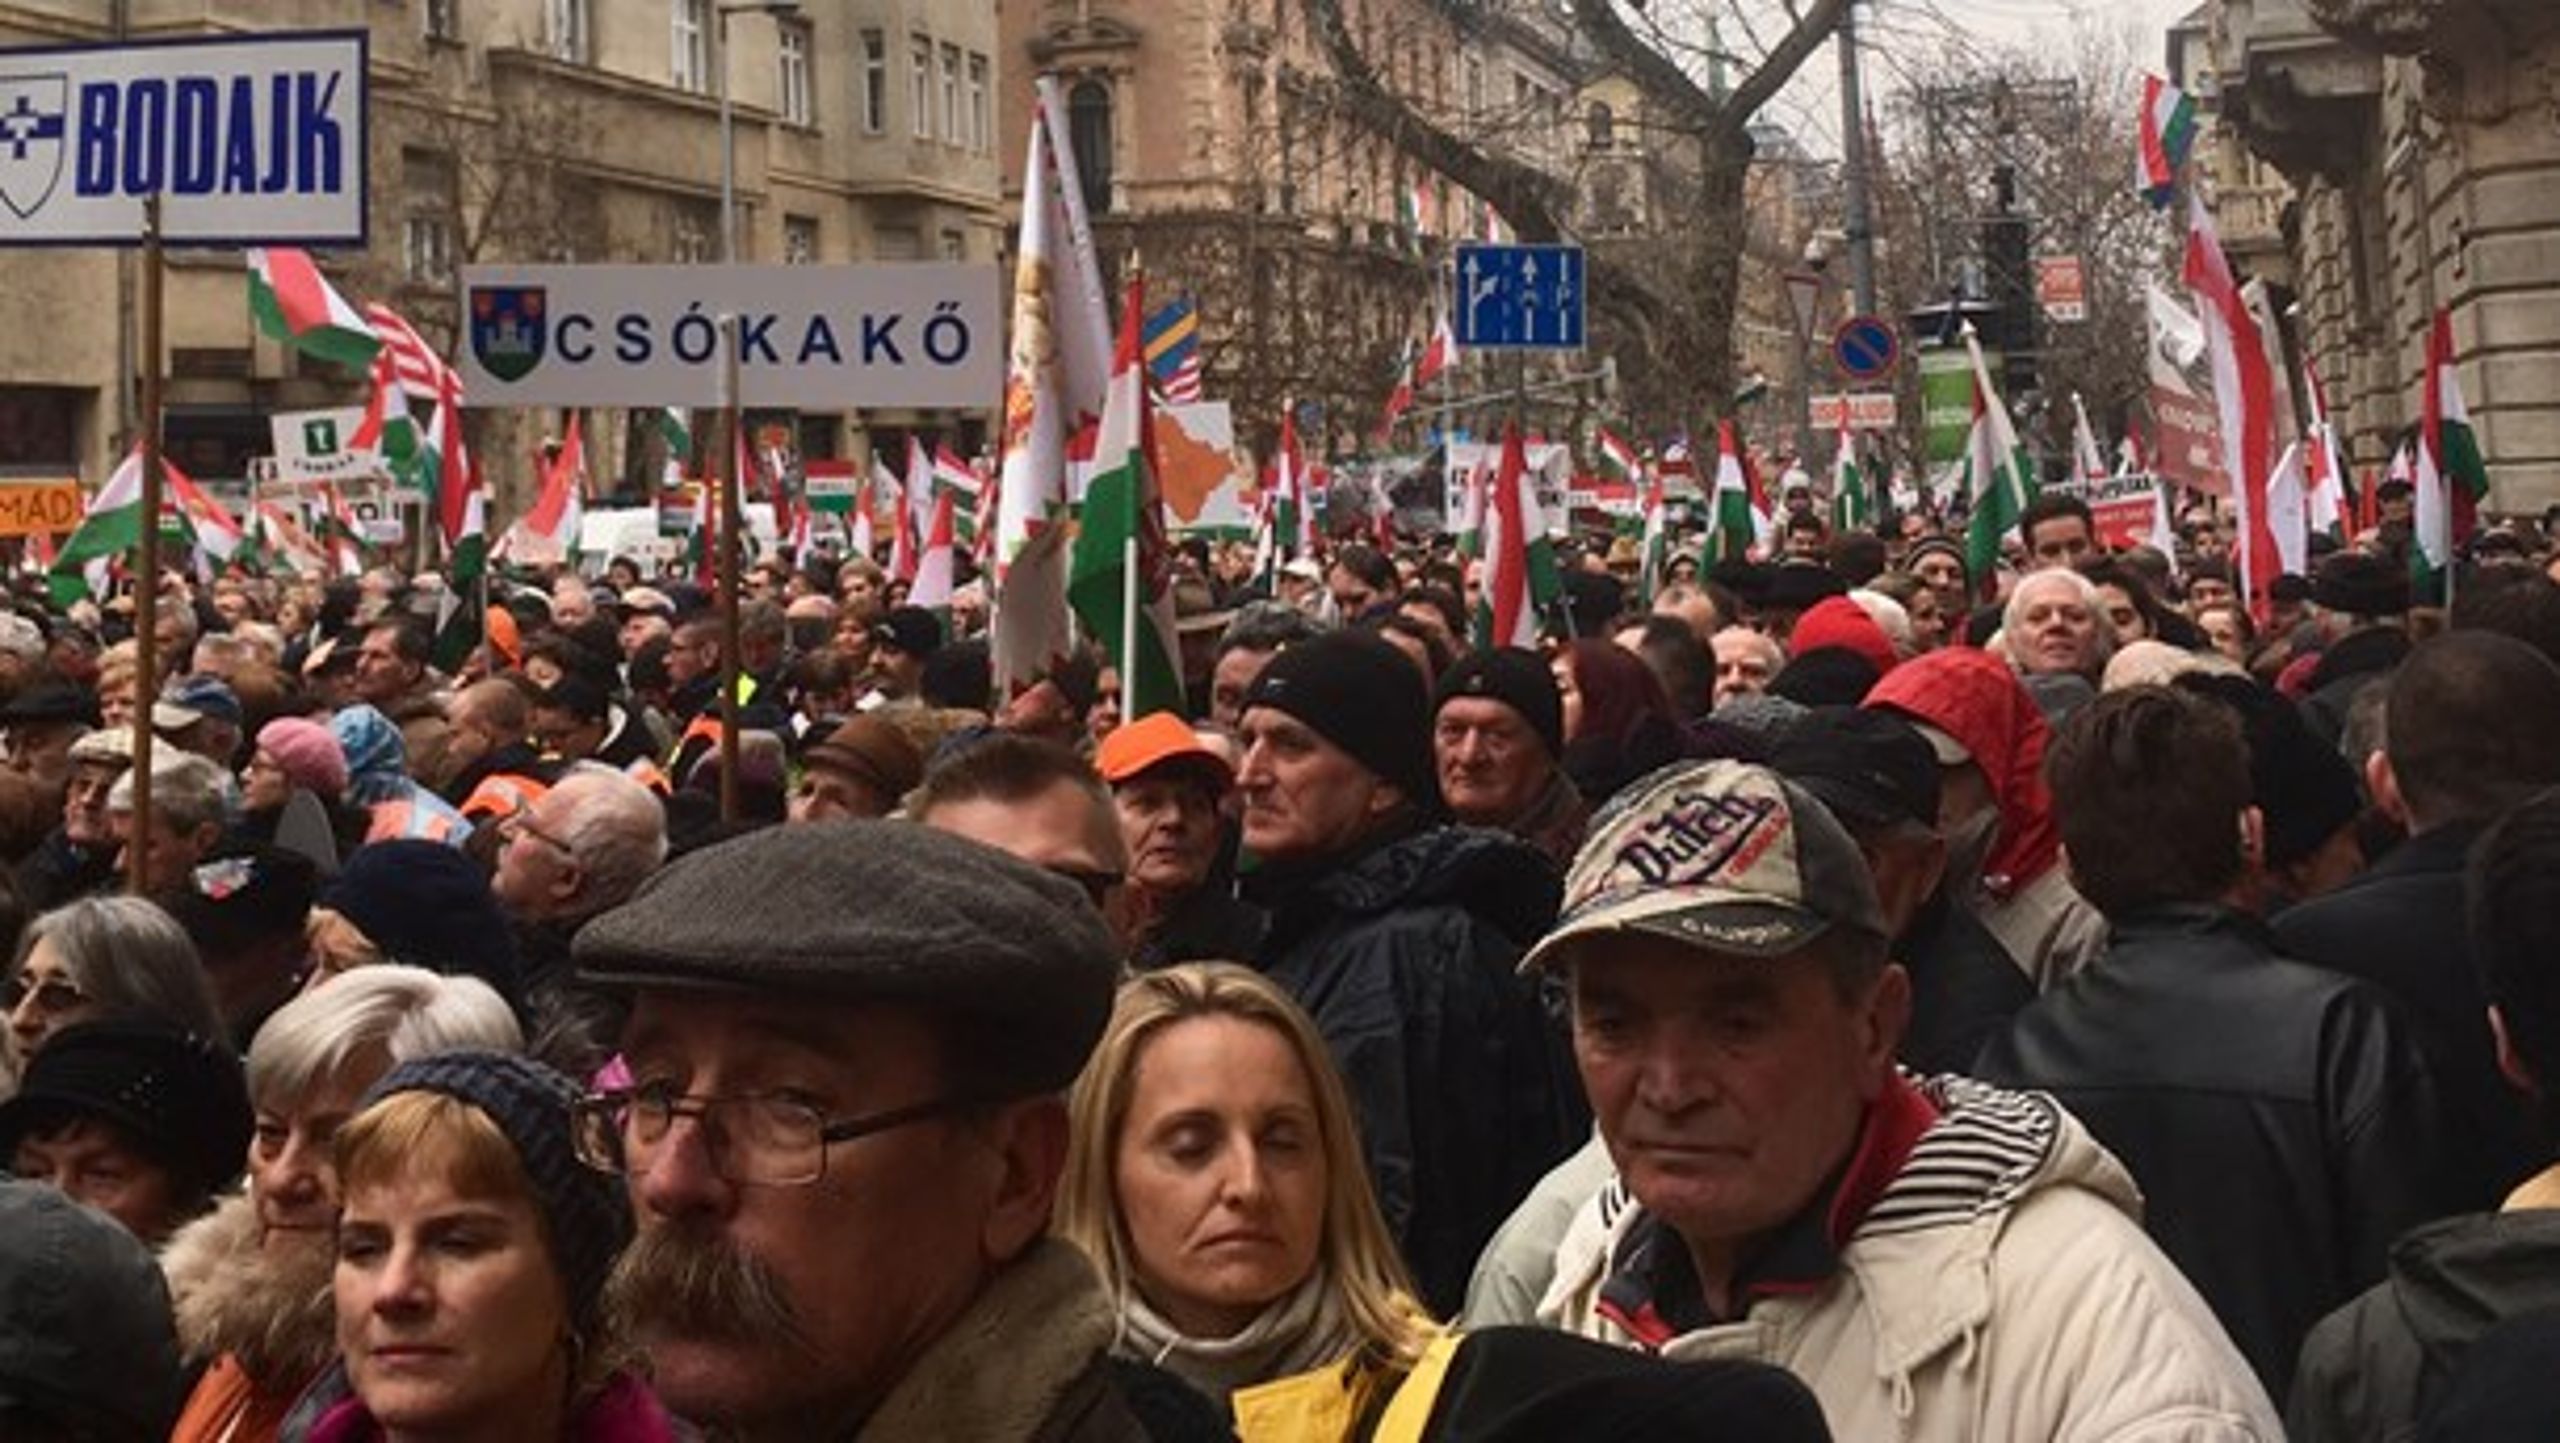 Valget i Ungarn bringer følelserne i kog og har sendt befolkningen på gaden både for og imod den siddende premierminister, Viktor Orbán.